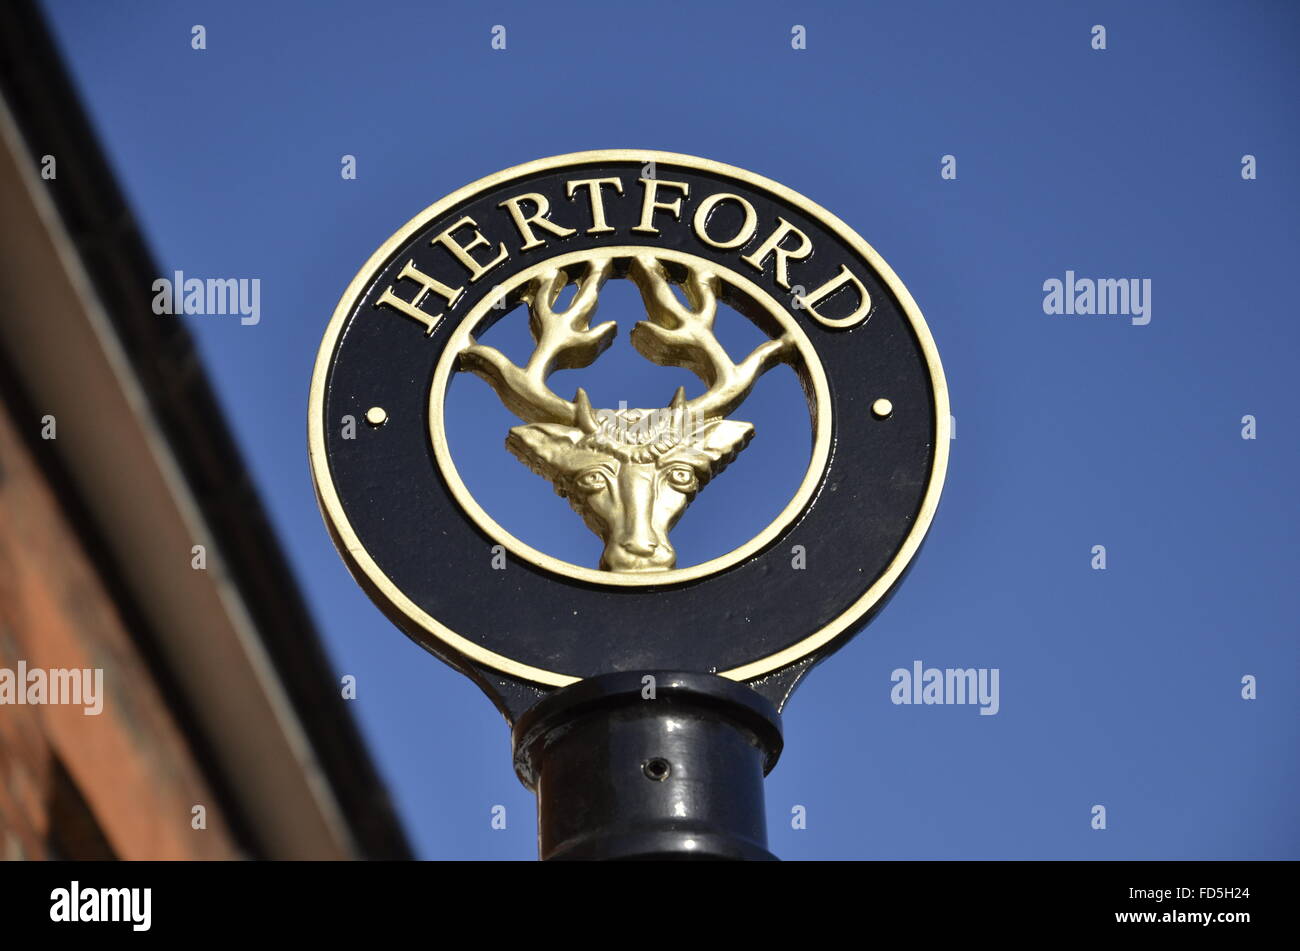 La ville signe d'Hertford, la ville du comté de Hertfordshire, au sud de l'Angleterre Banque D'Images